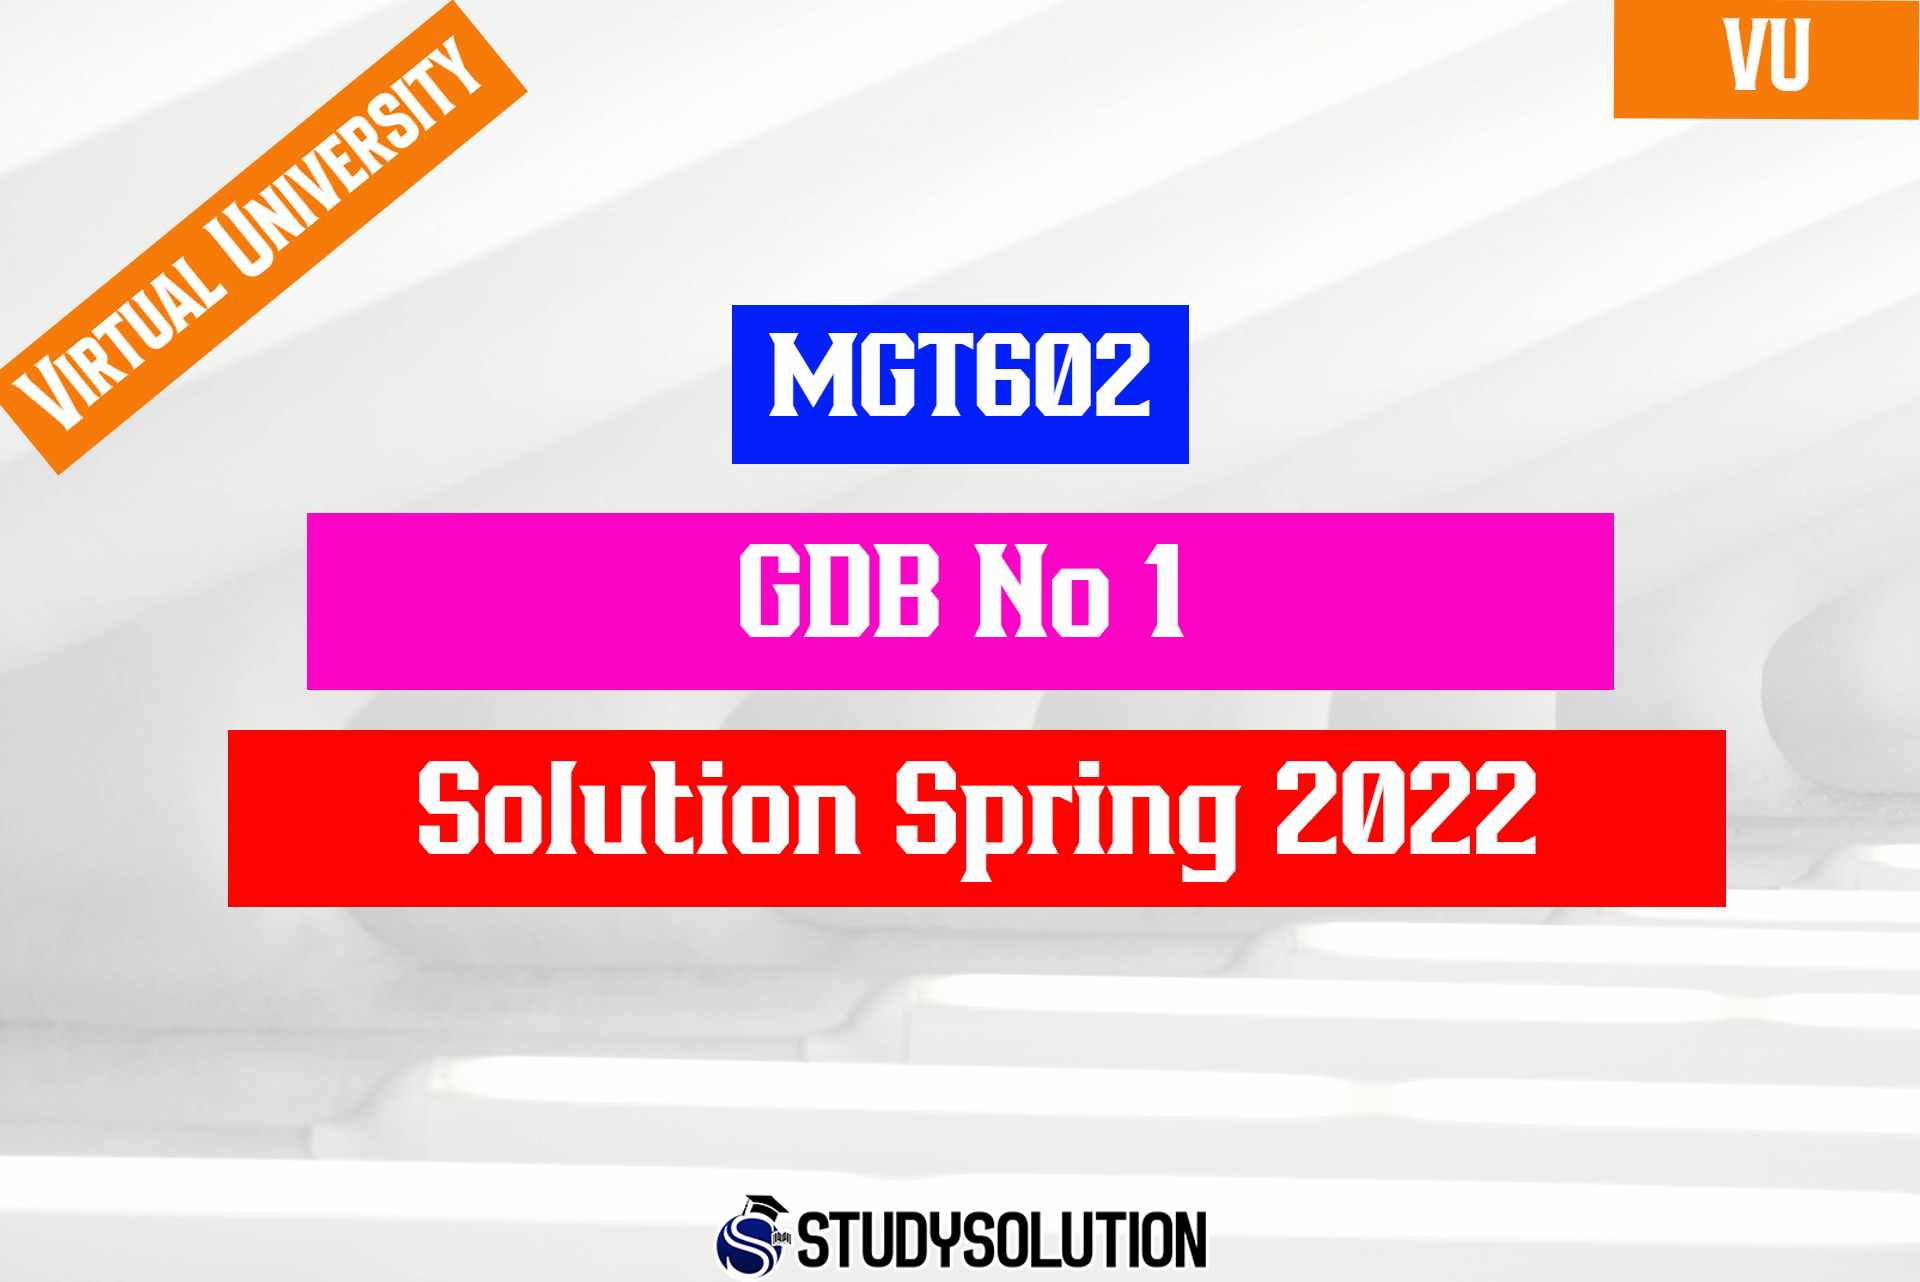 MGT602 GDB No 1 Solution Spring 2022